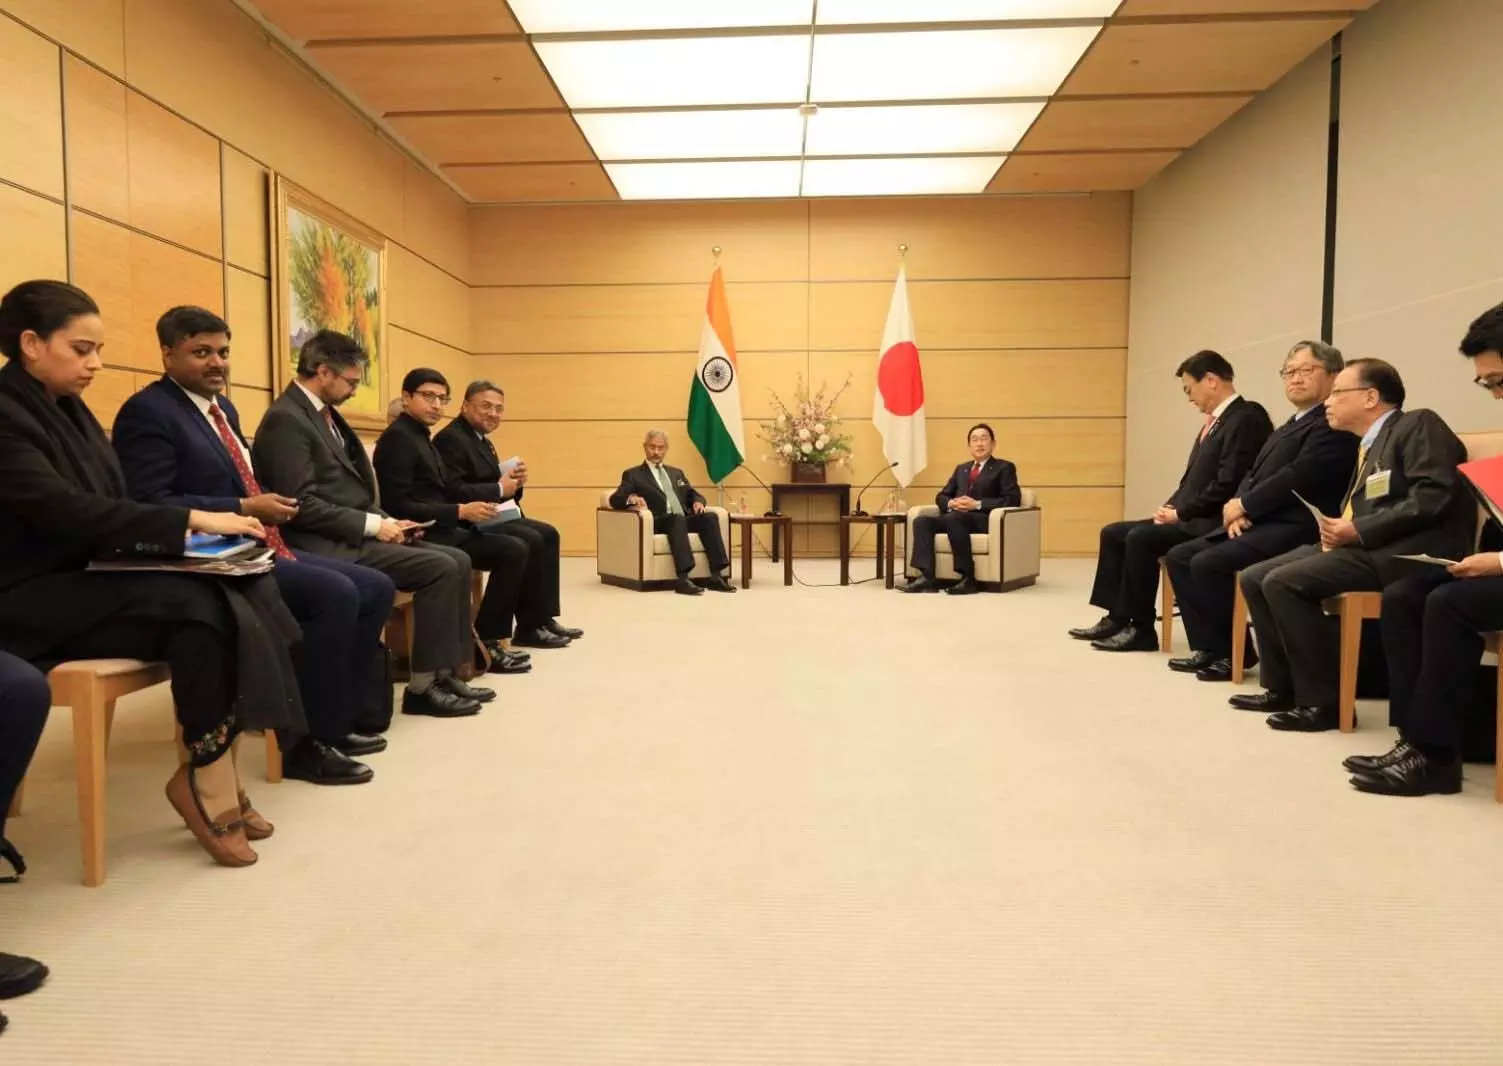 विदेश मंत्री की जापान यात्रा से द्विपक्षीय संबंधों की समीक्षा का मिला अवसर: विदेश मंत्रालय